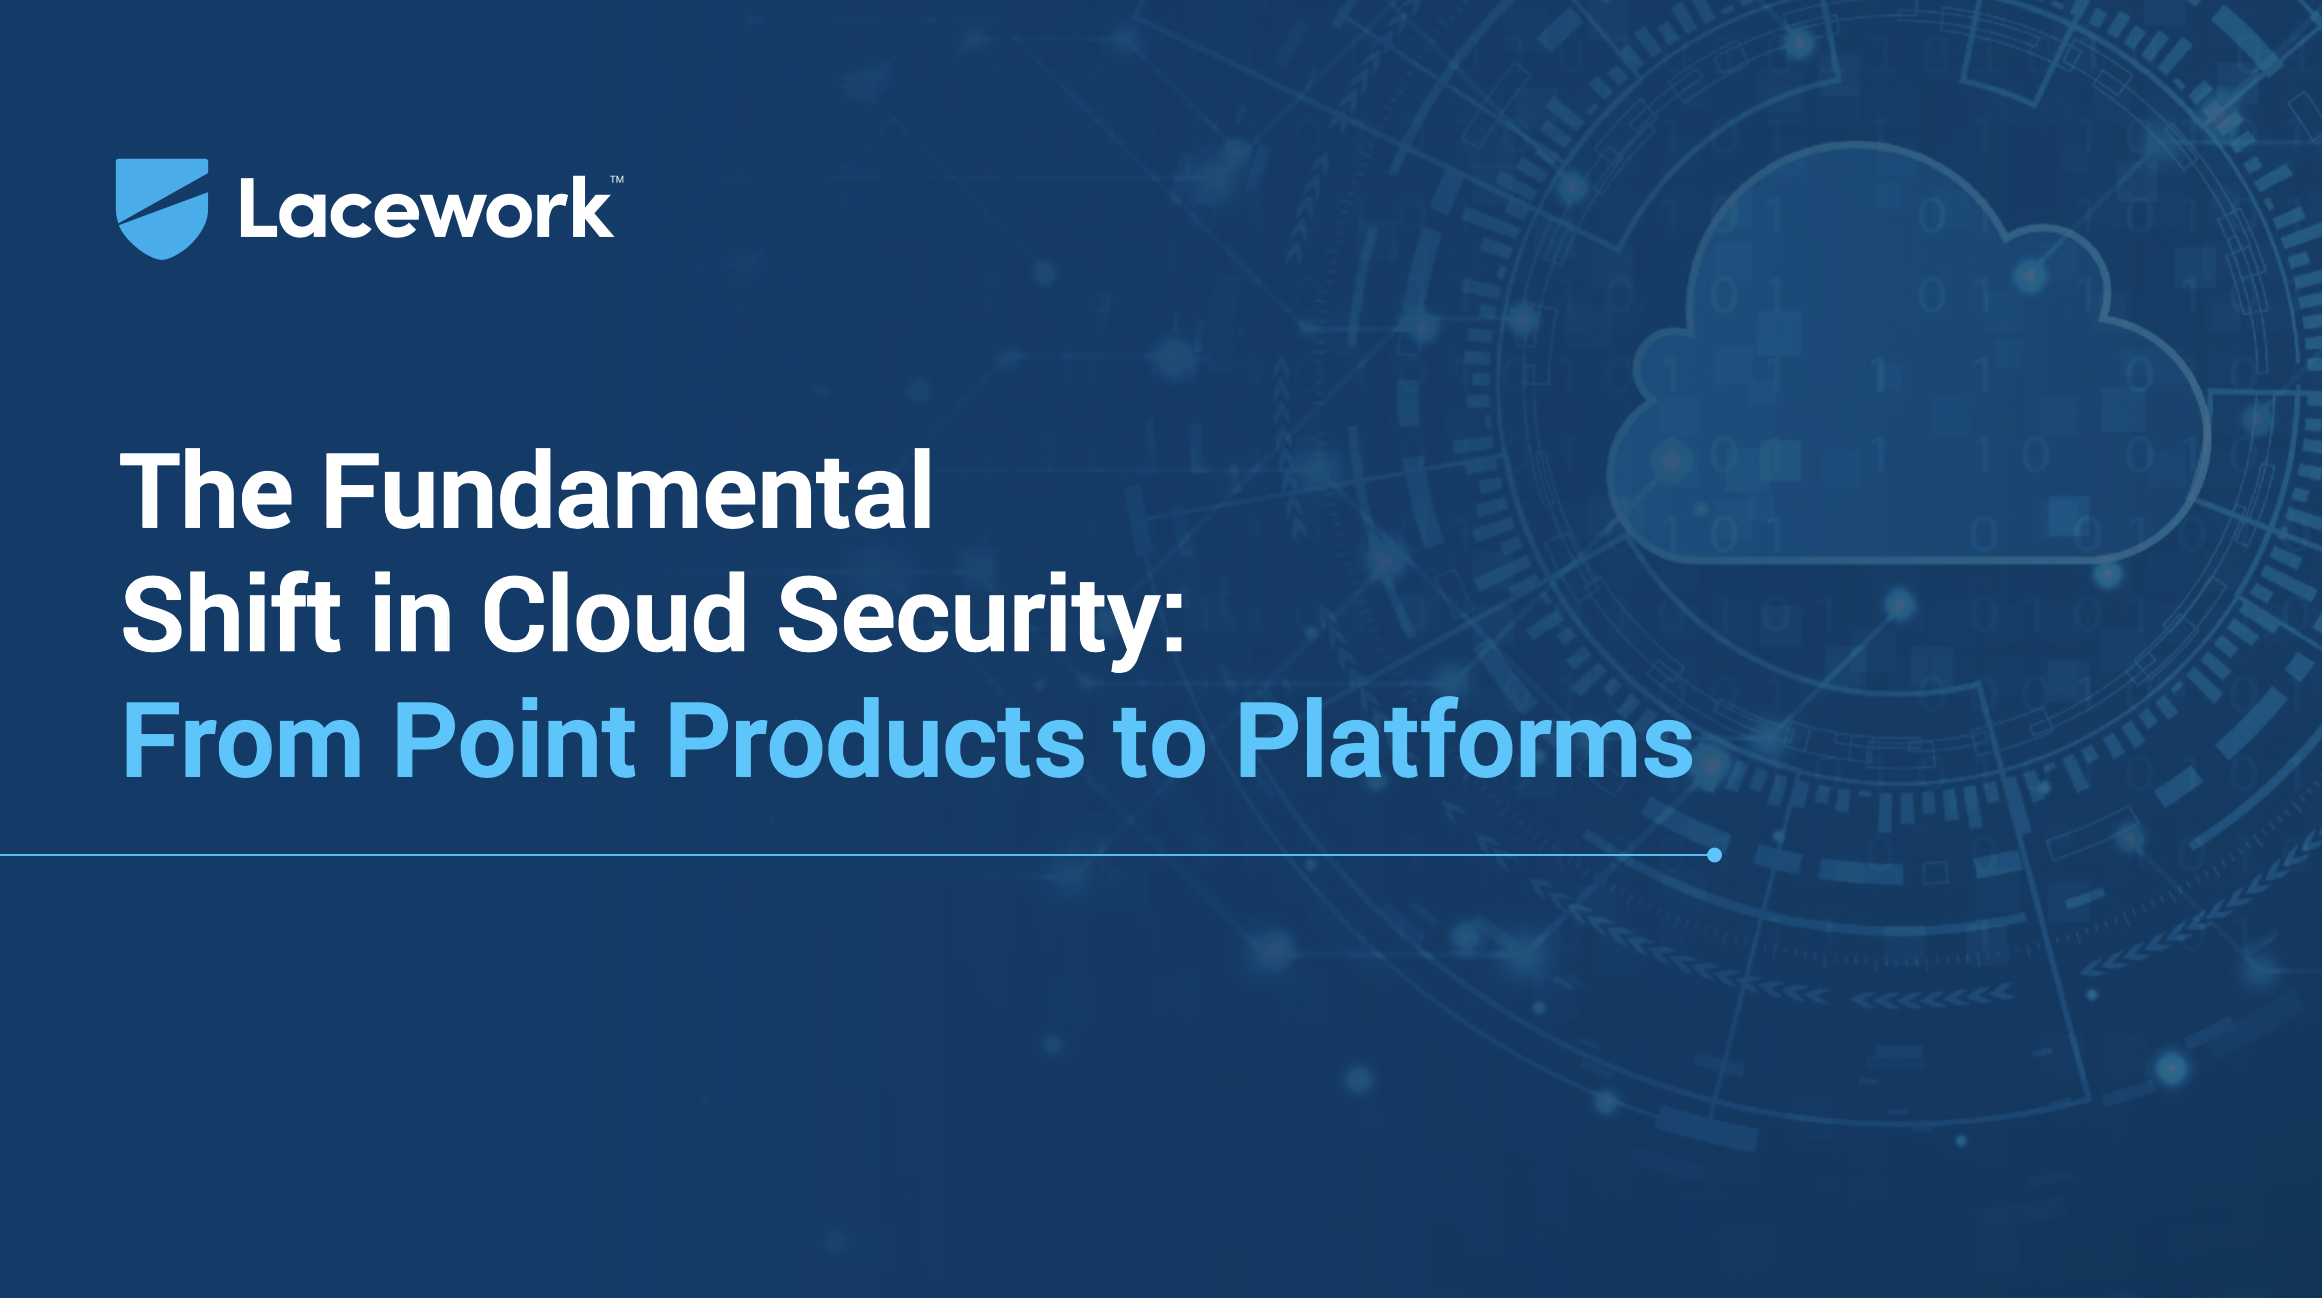 Der fundamentale Wandel in der Cloud-Sicherheit: von Einzelprodukten zu Plattformen